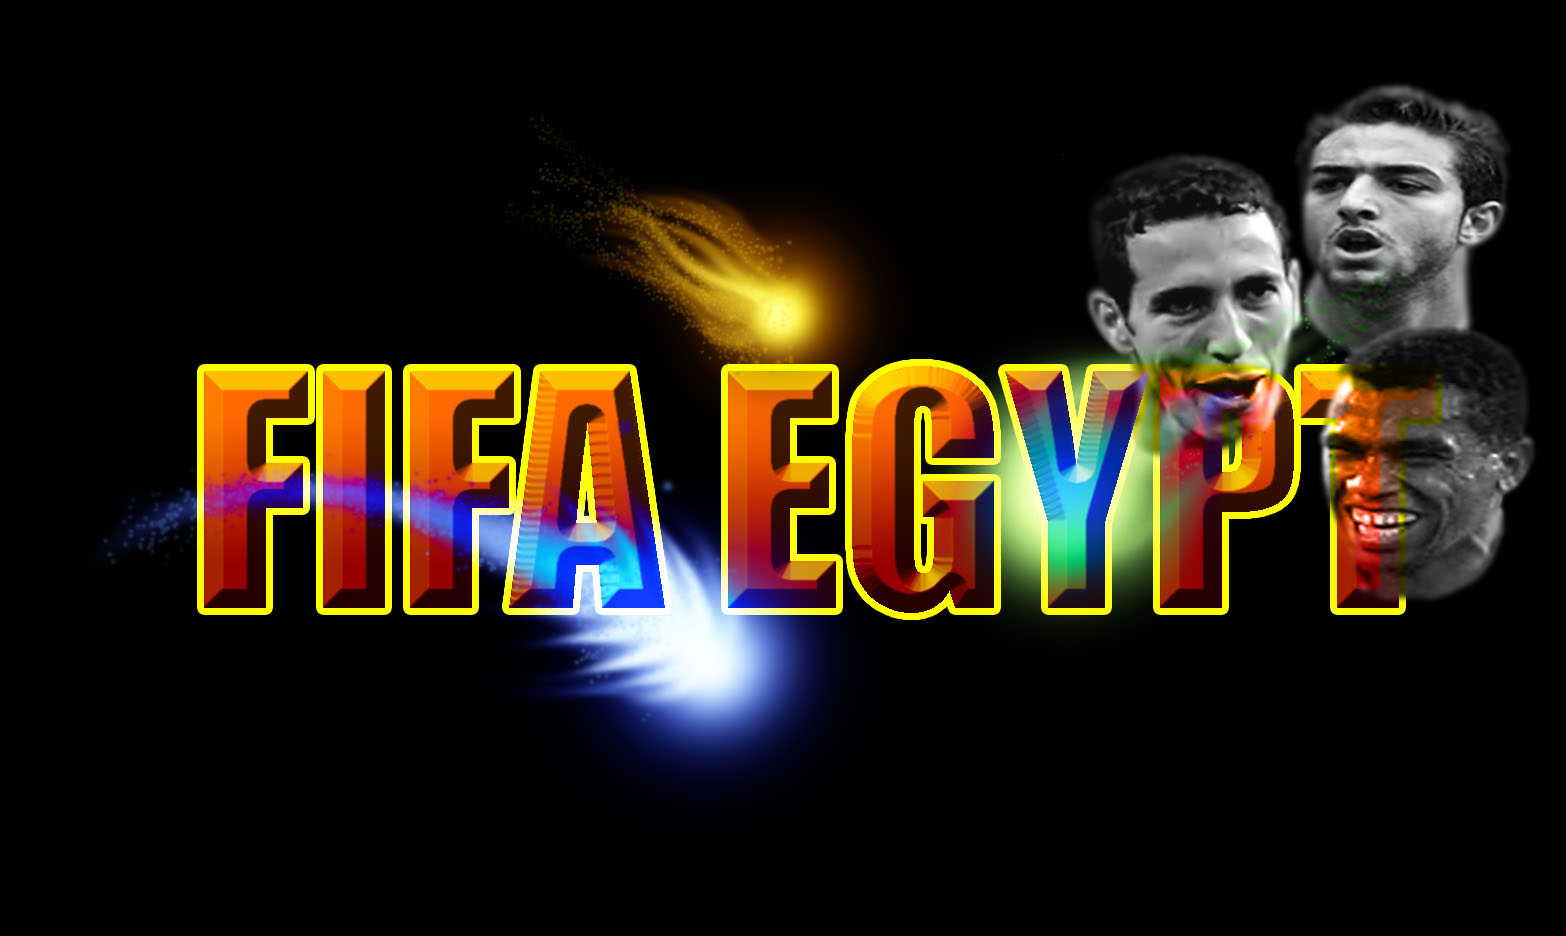 باتش الدورى المصر2011 لفيفا 2009 + المنتخب المصرى+جميع الانتقالات الجديدة   Effect11